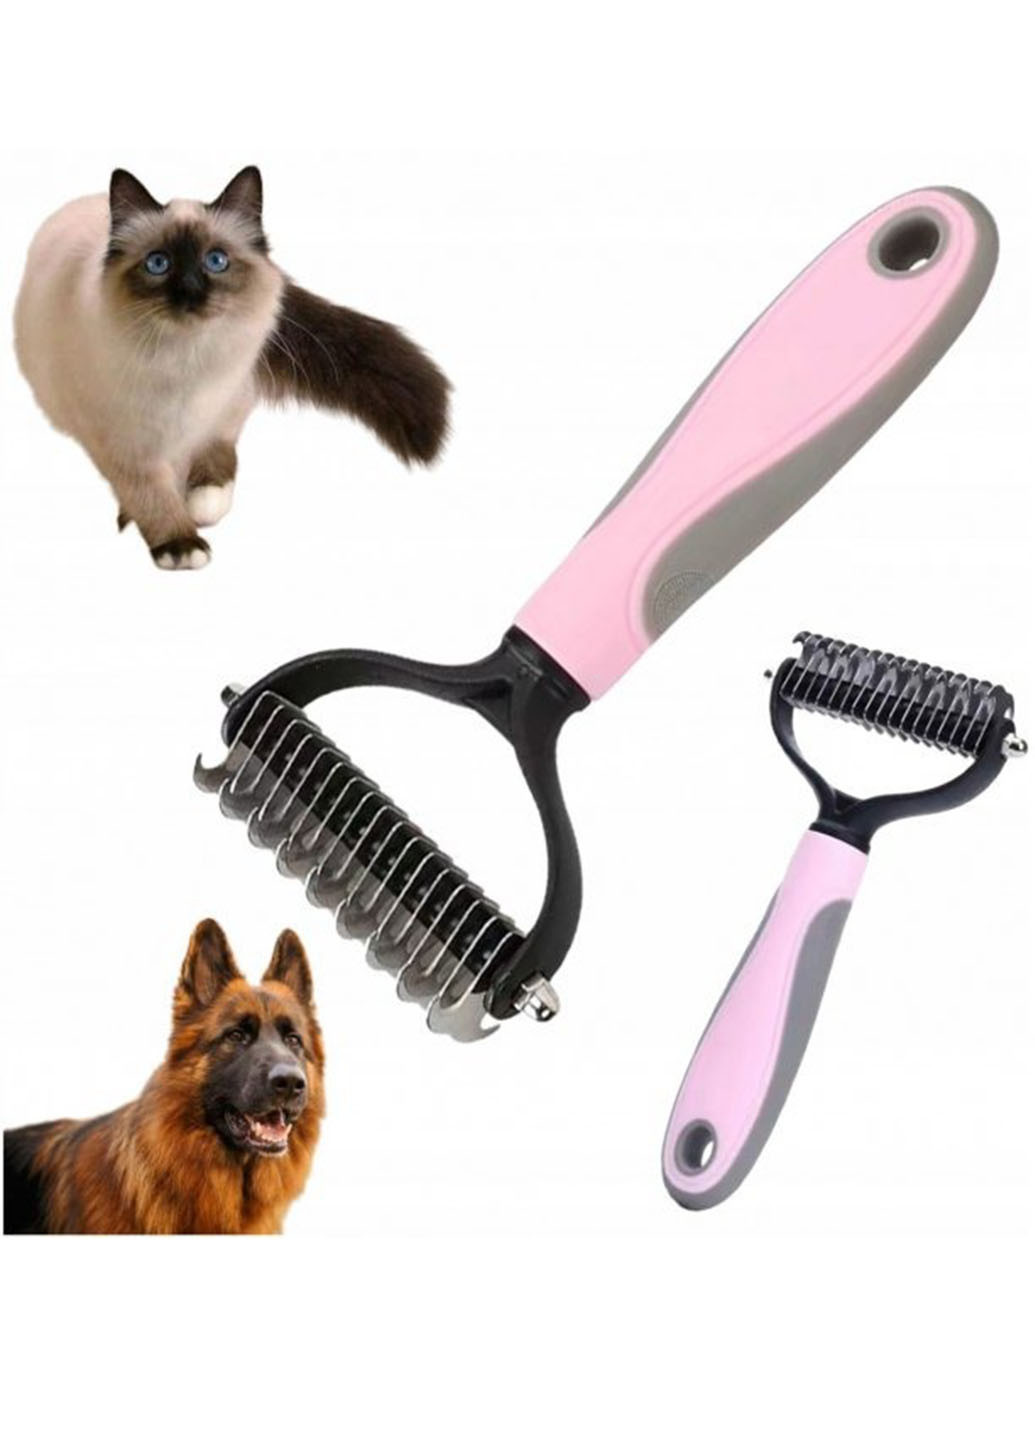 Двостороння щітка - гребінець для тварин Pet Knot Comb для вичісування шерсті котів та собак колтуноріз Good Idea (272149204)